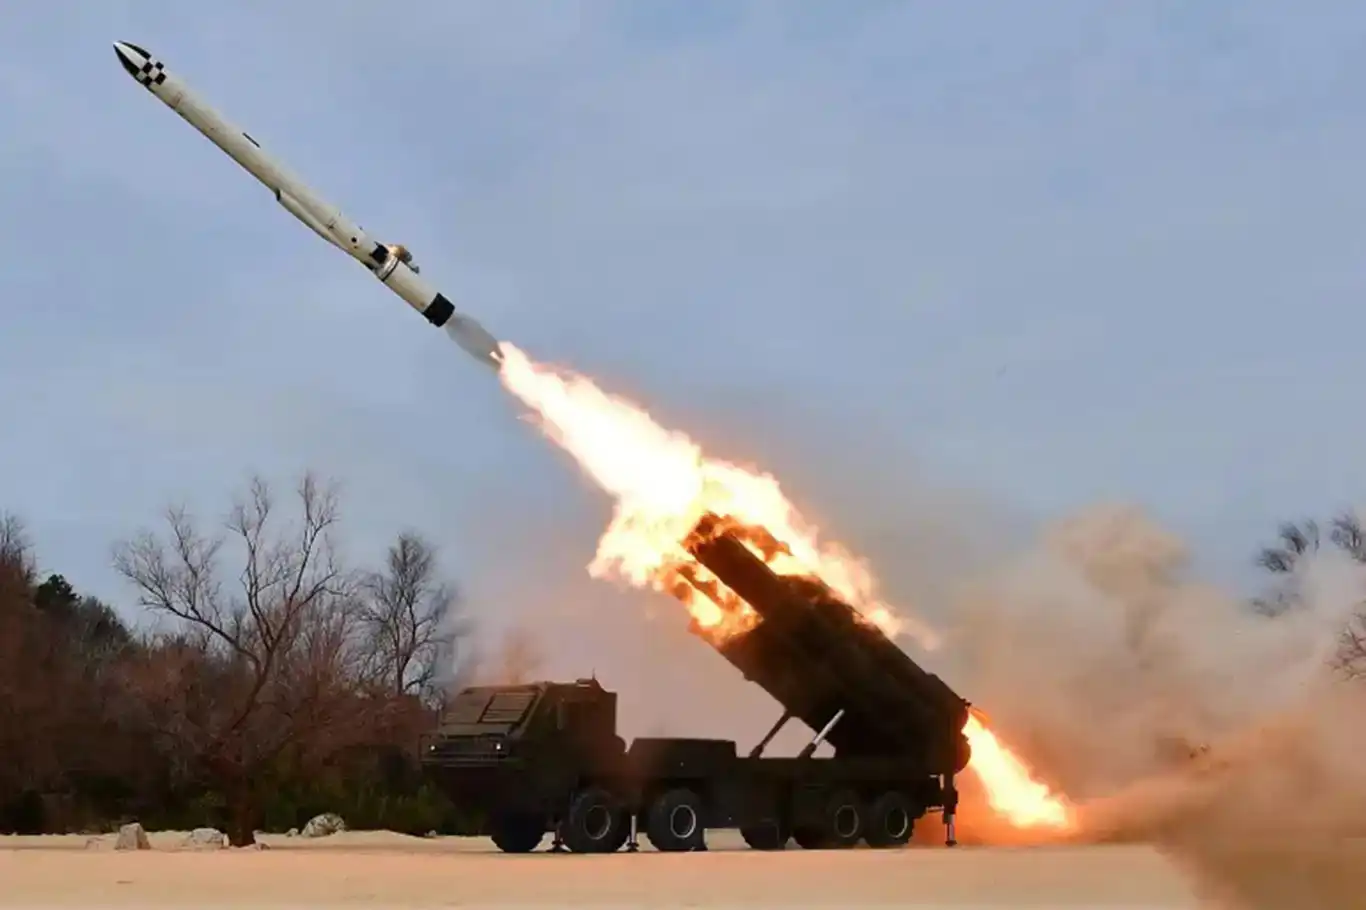 في إطار تجاربها الصاروخية المستمرة.. كوريا الشمالية تختبر "رأس حربي كبير جدا"